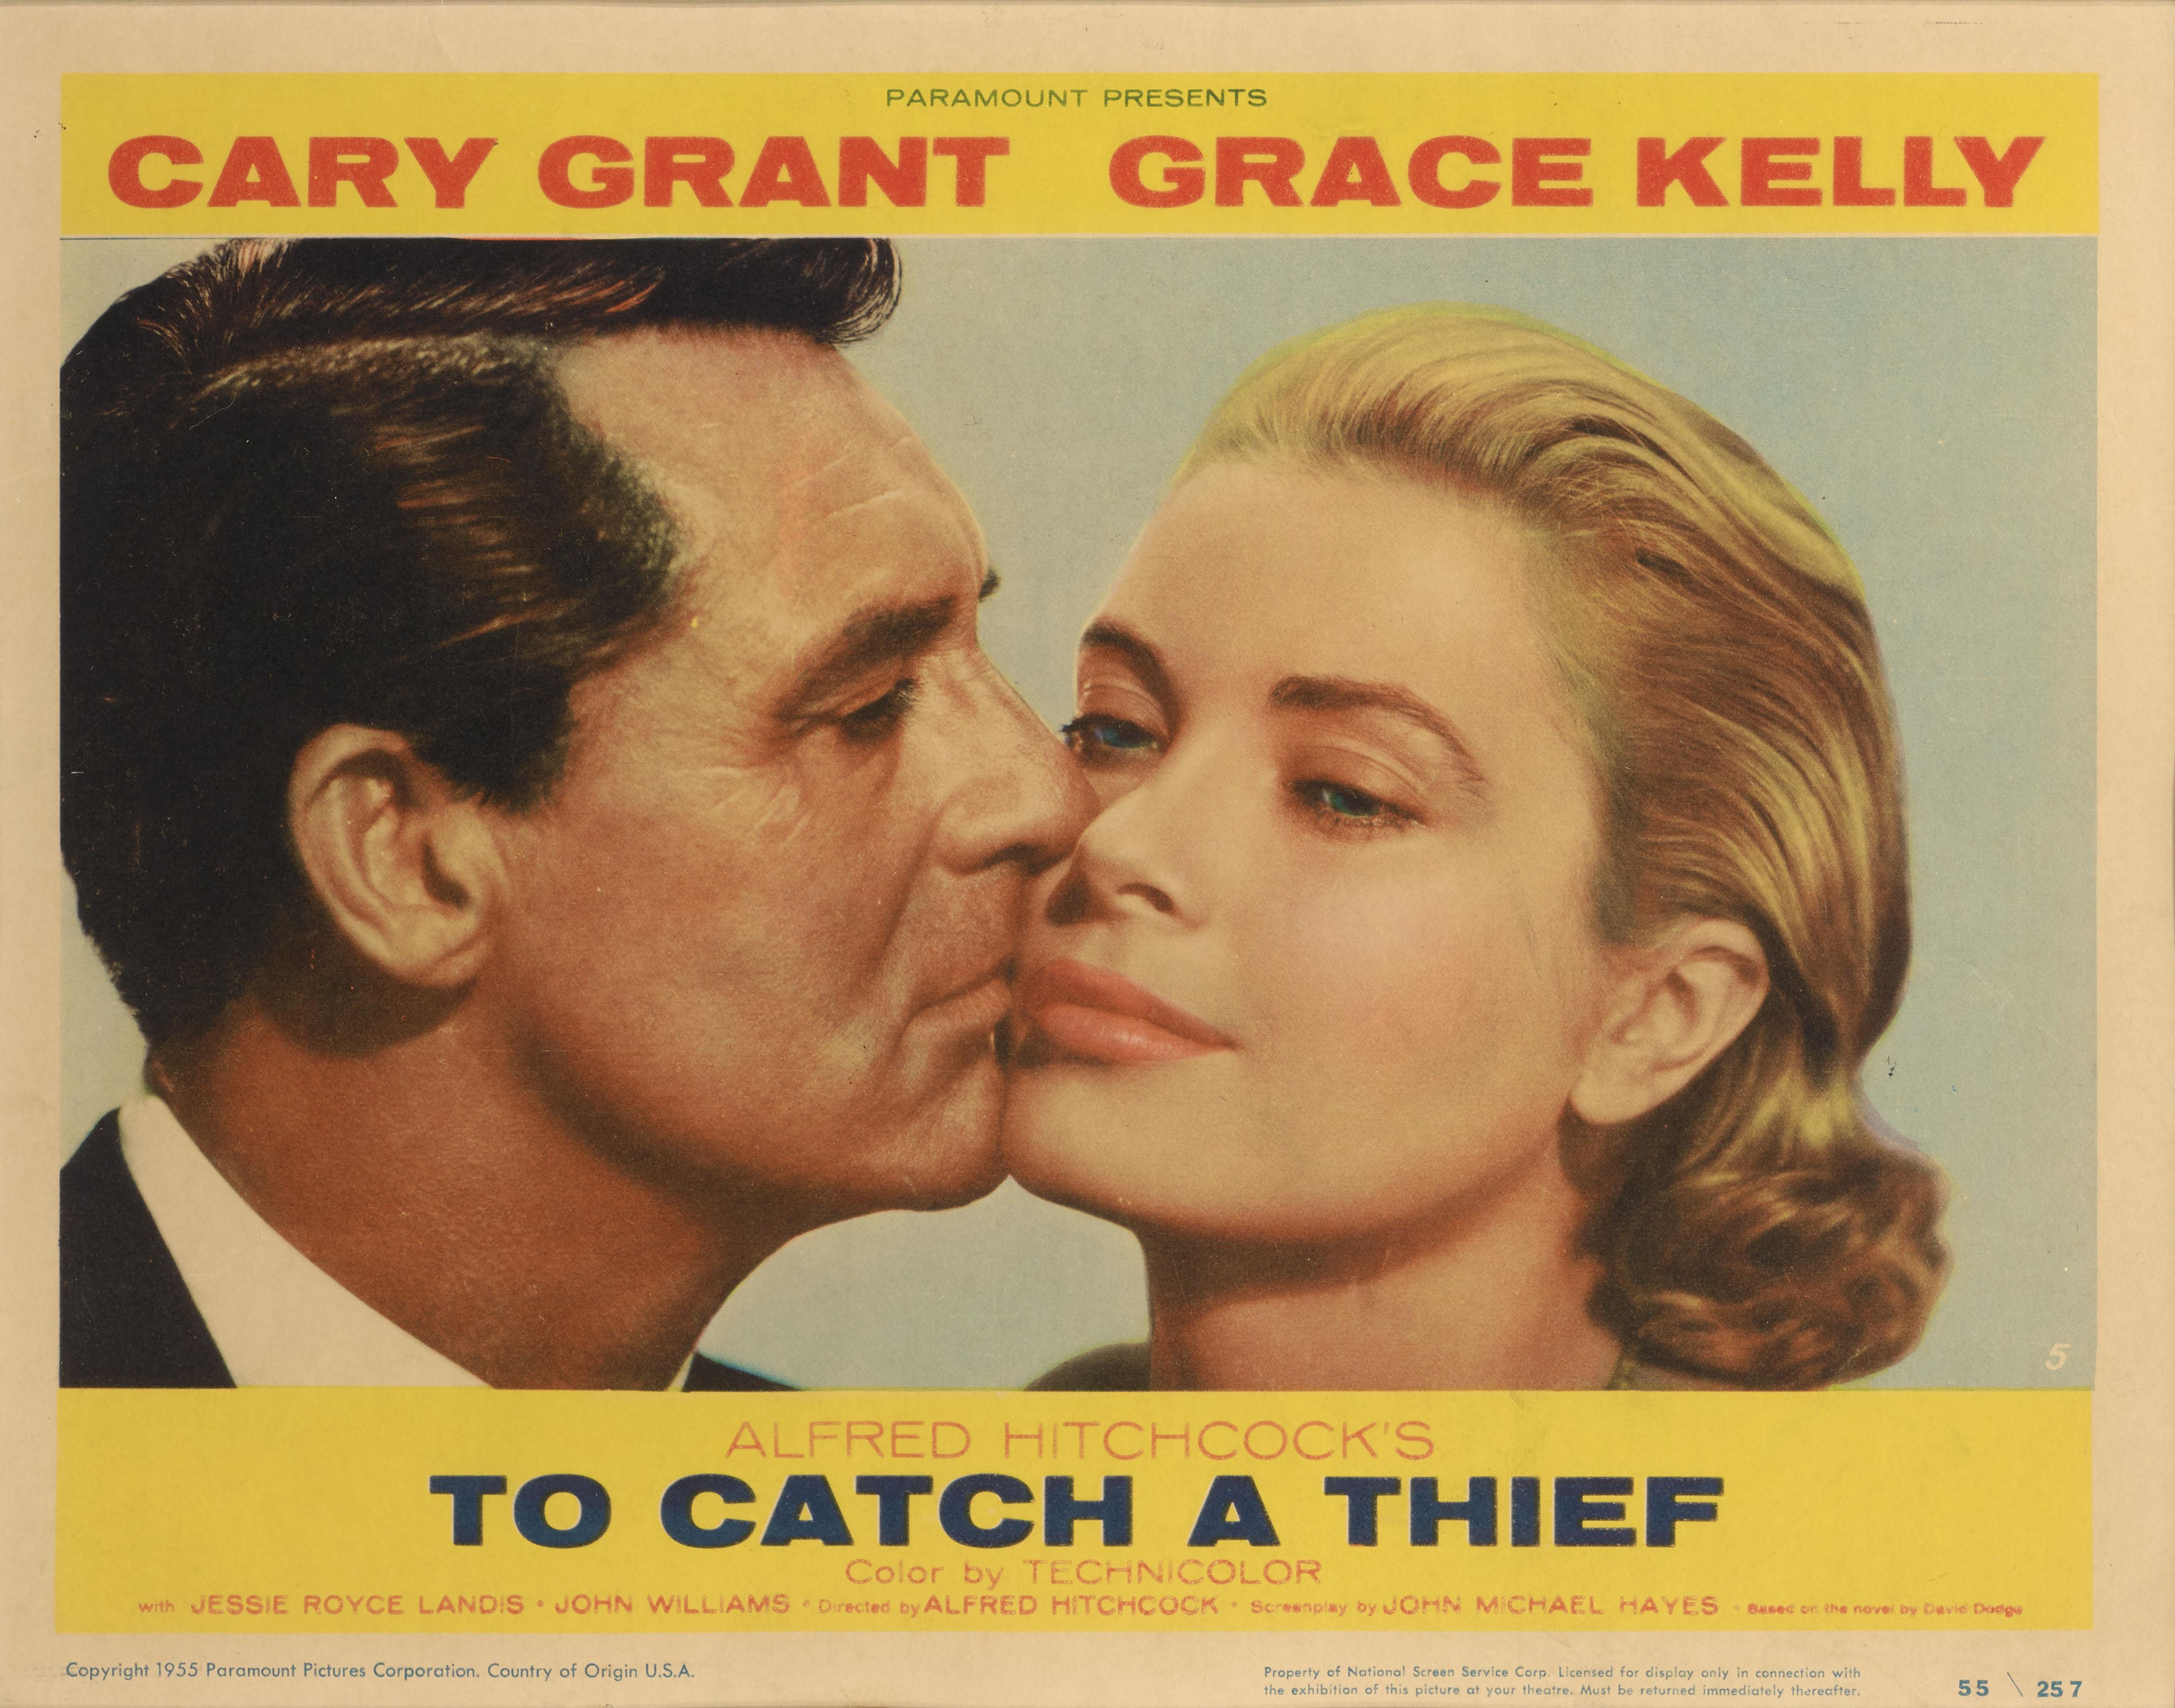 Original US-Lobbykarte für den klassischen Alfred-Hitchcock-Thriller To Catch a Thief von 1955.
In diesem Film spielen Cary Grant und Grace Kelly die Hauptrollen.
Dies ist die beste Karte aus dem originalen US-Lobbykarten-Set.
Diese Lobbykarte